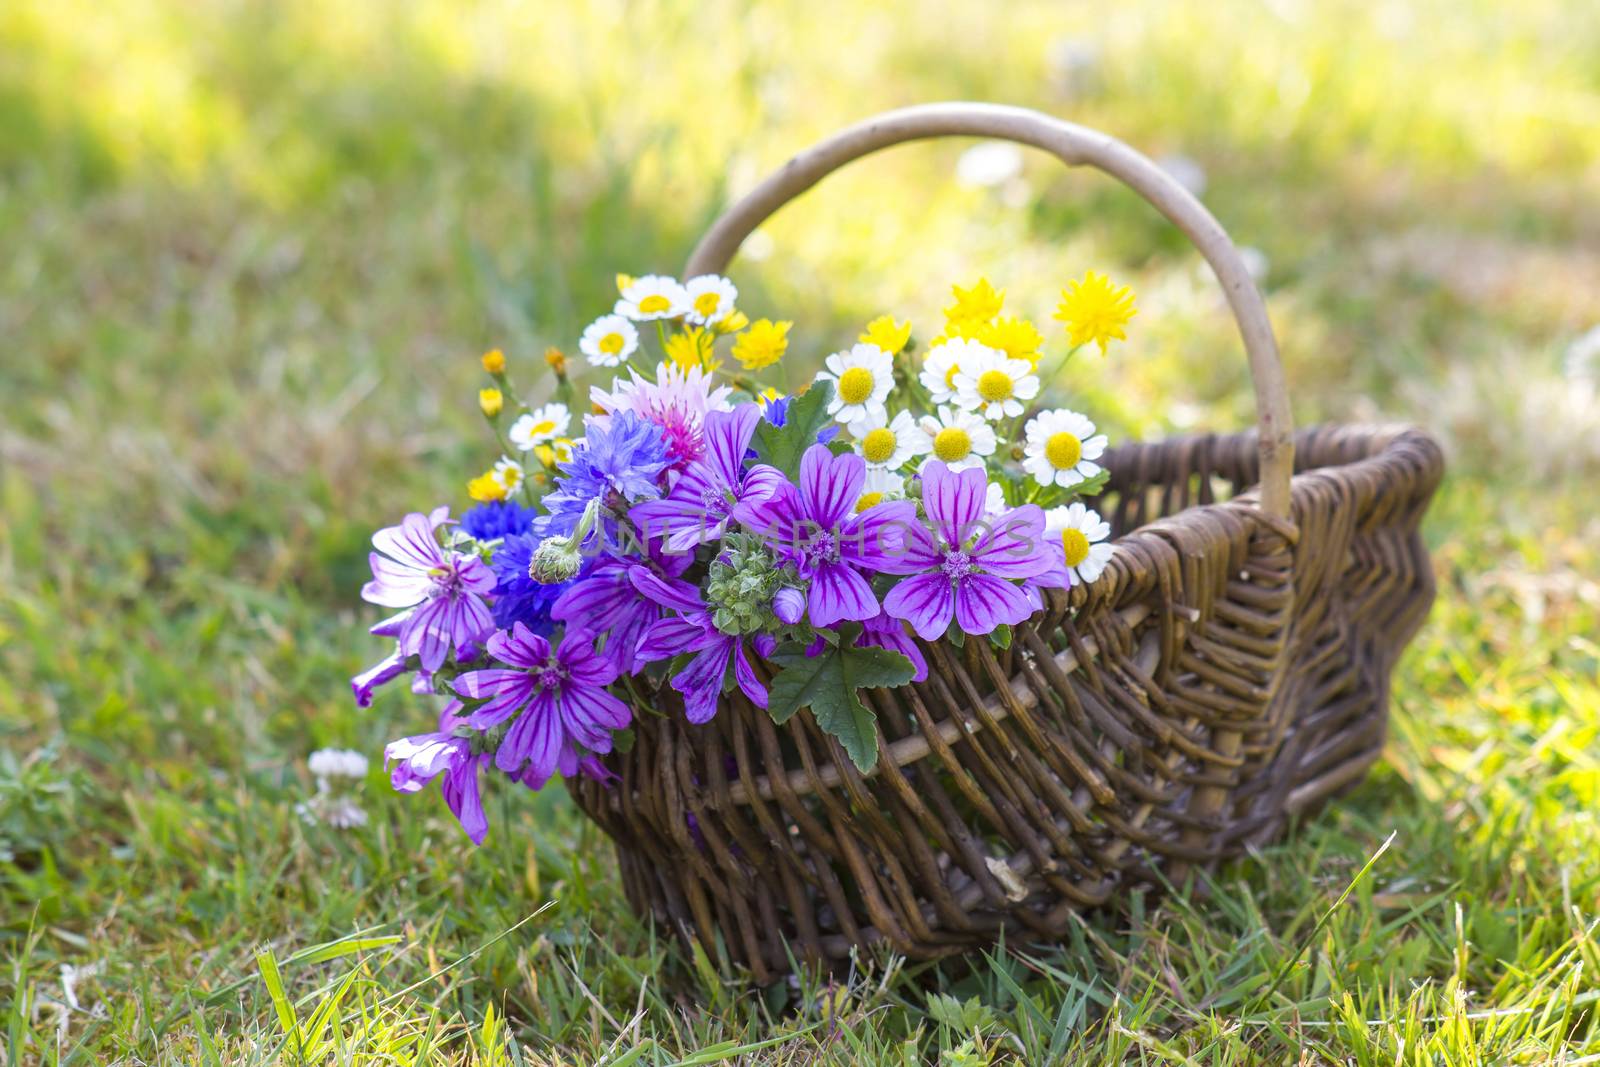 wildflowers in a basket by miradrozdowski